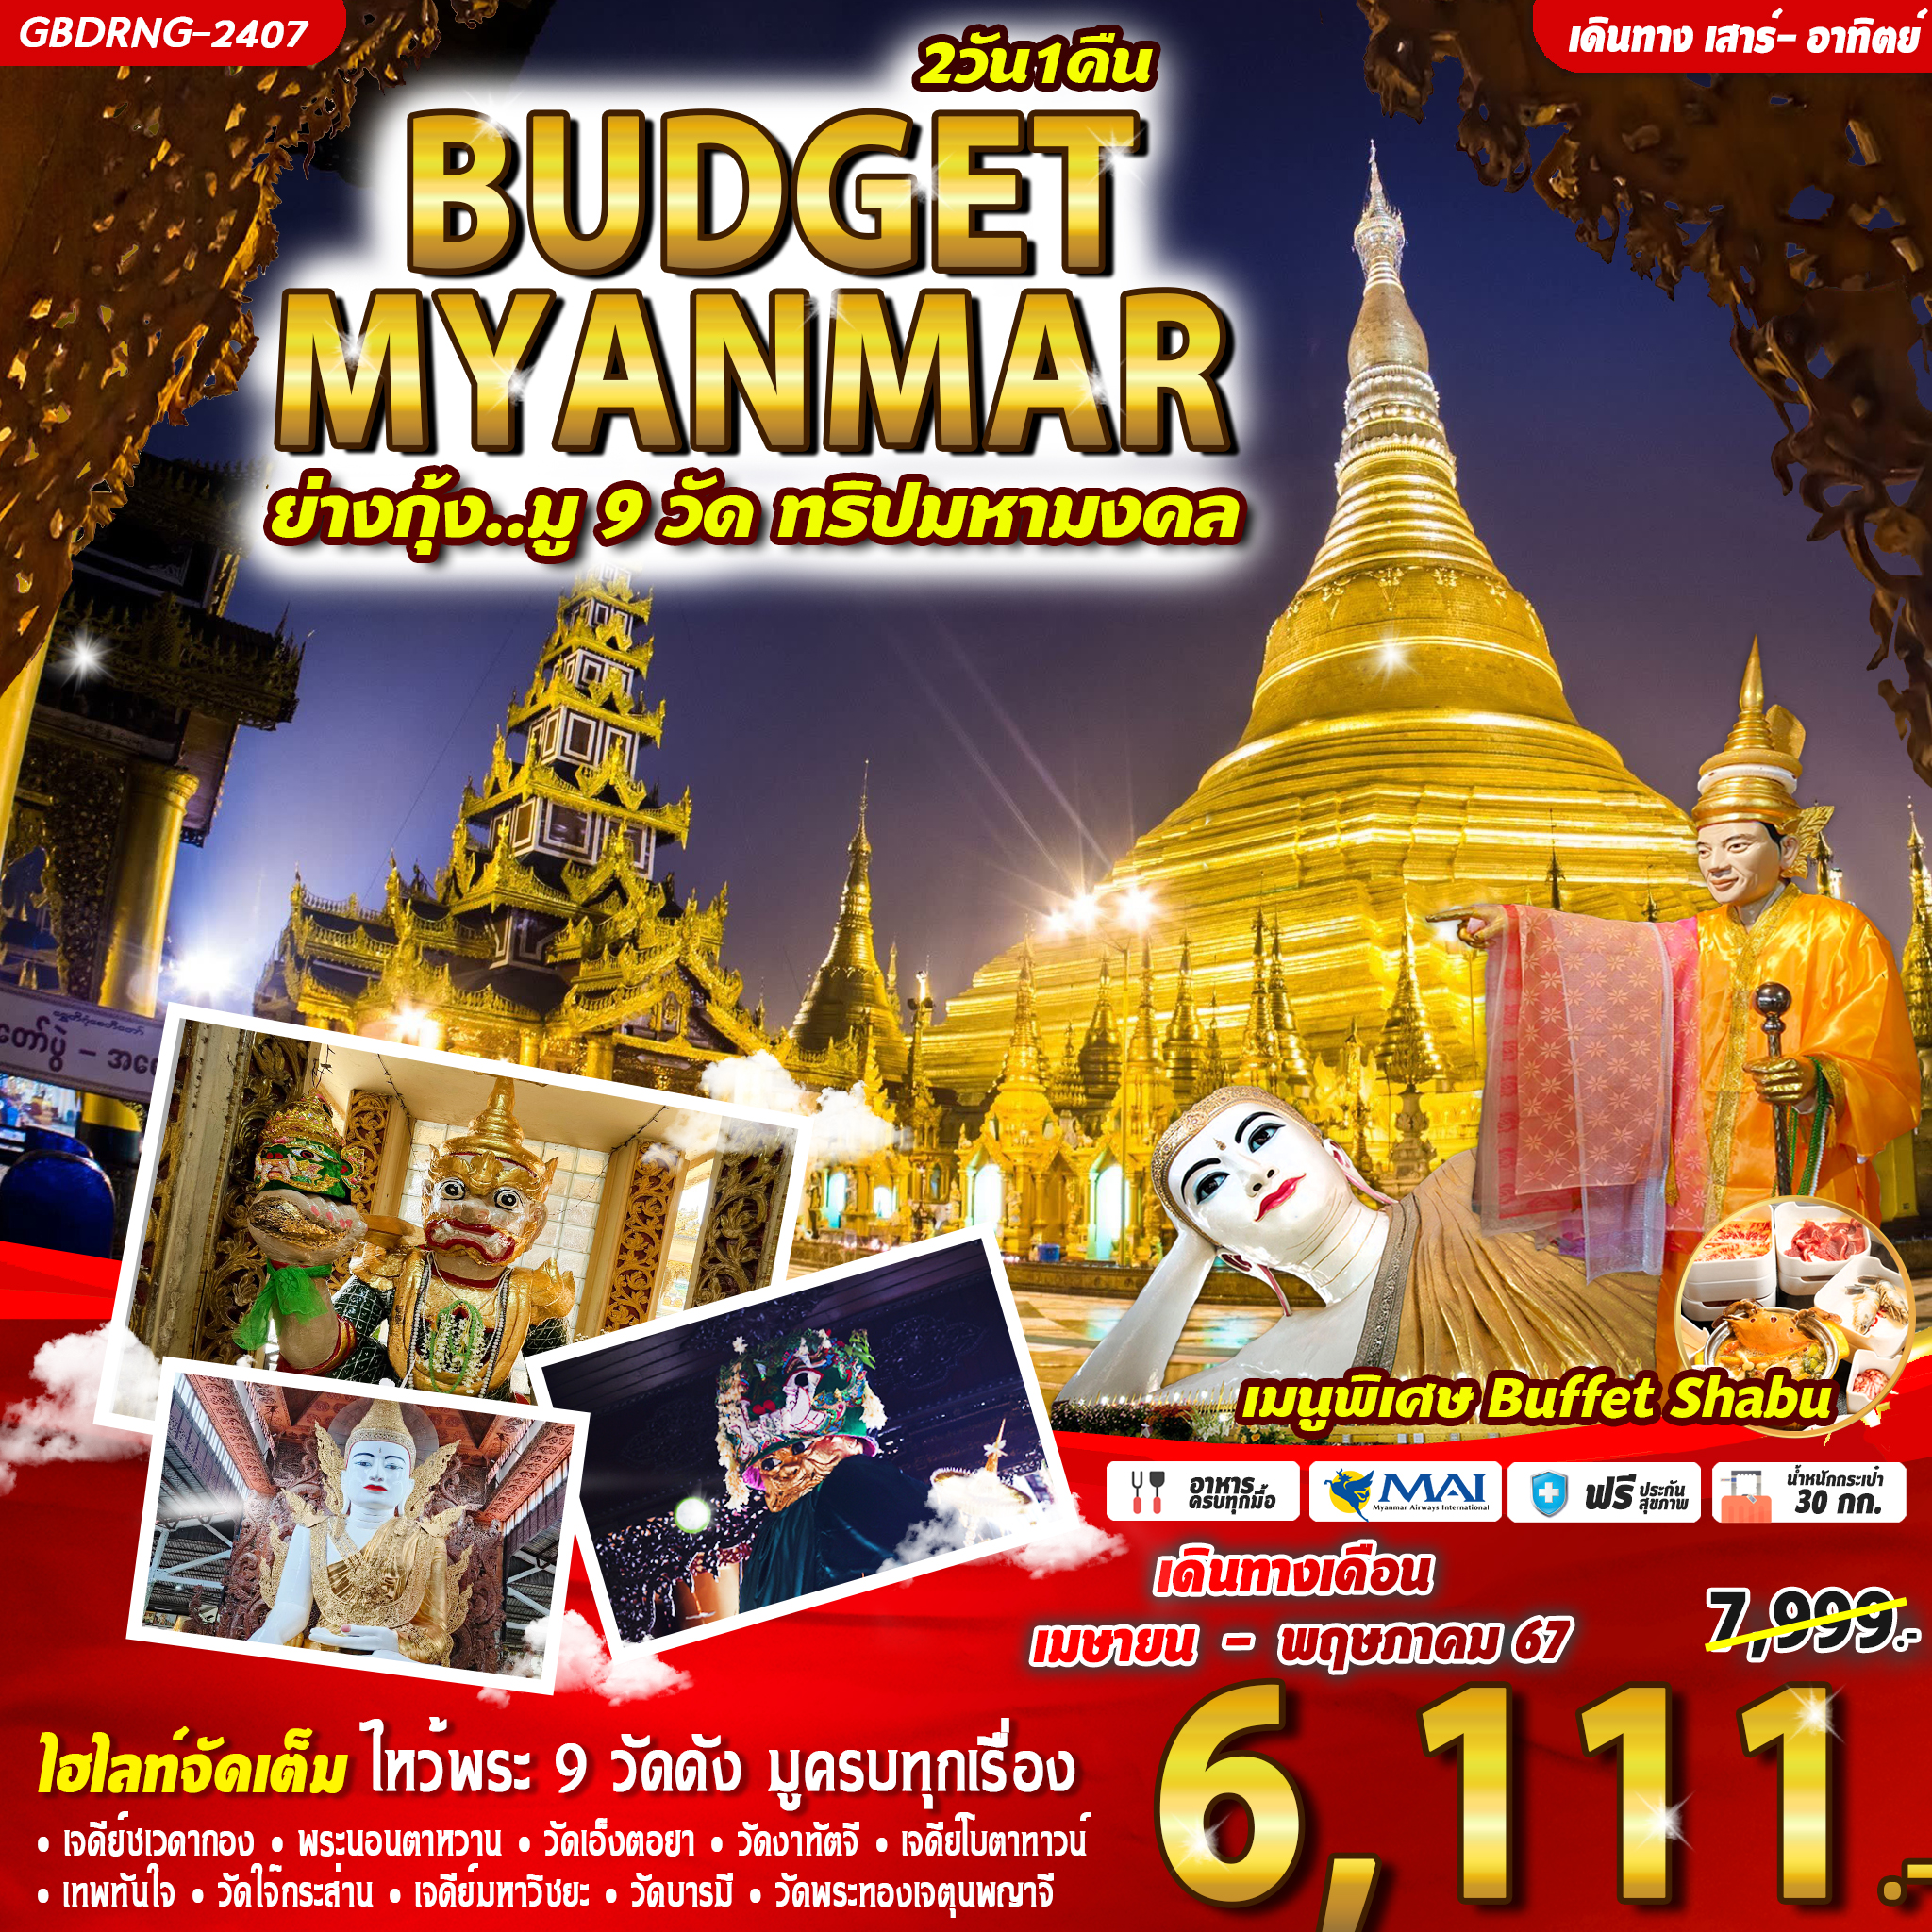 BUDGET MYANMAR 2D1N BY 8M